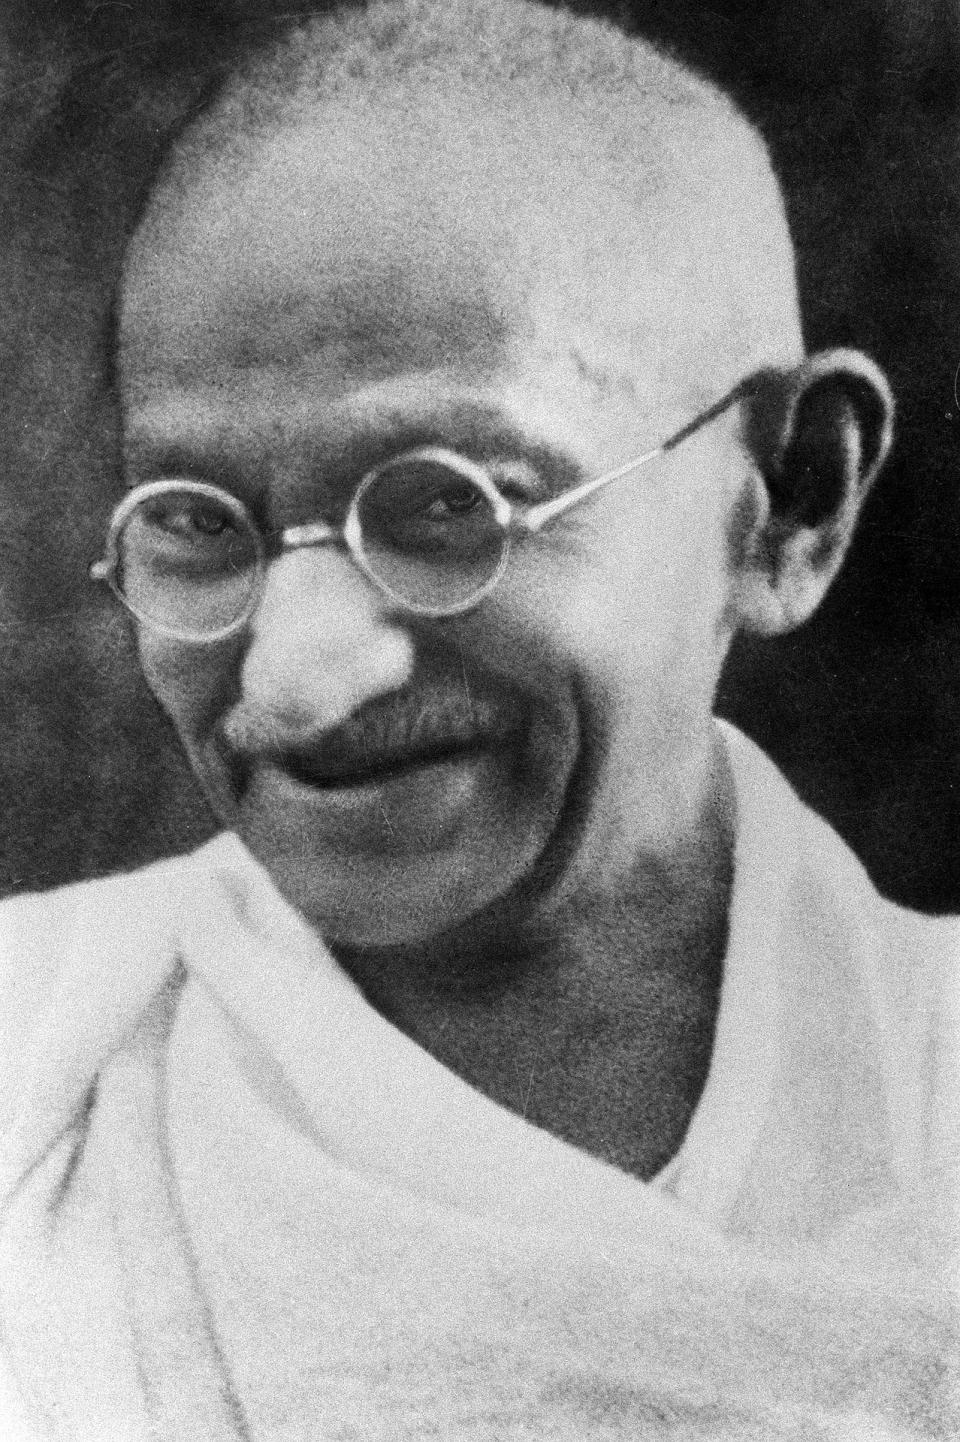 6. Absence of Gandhi